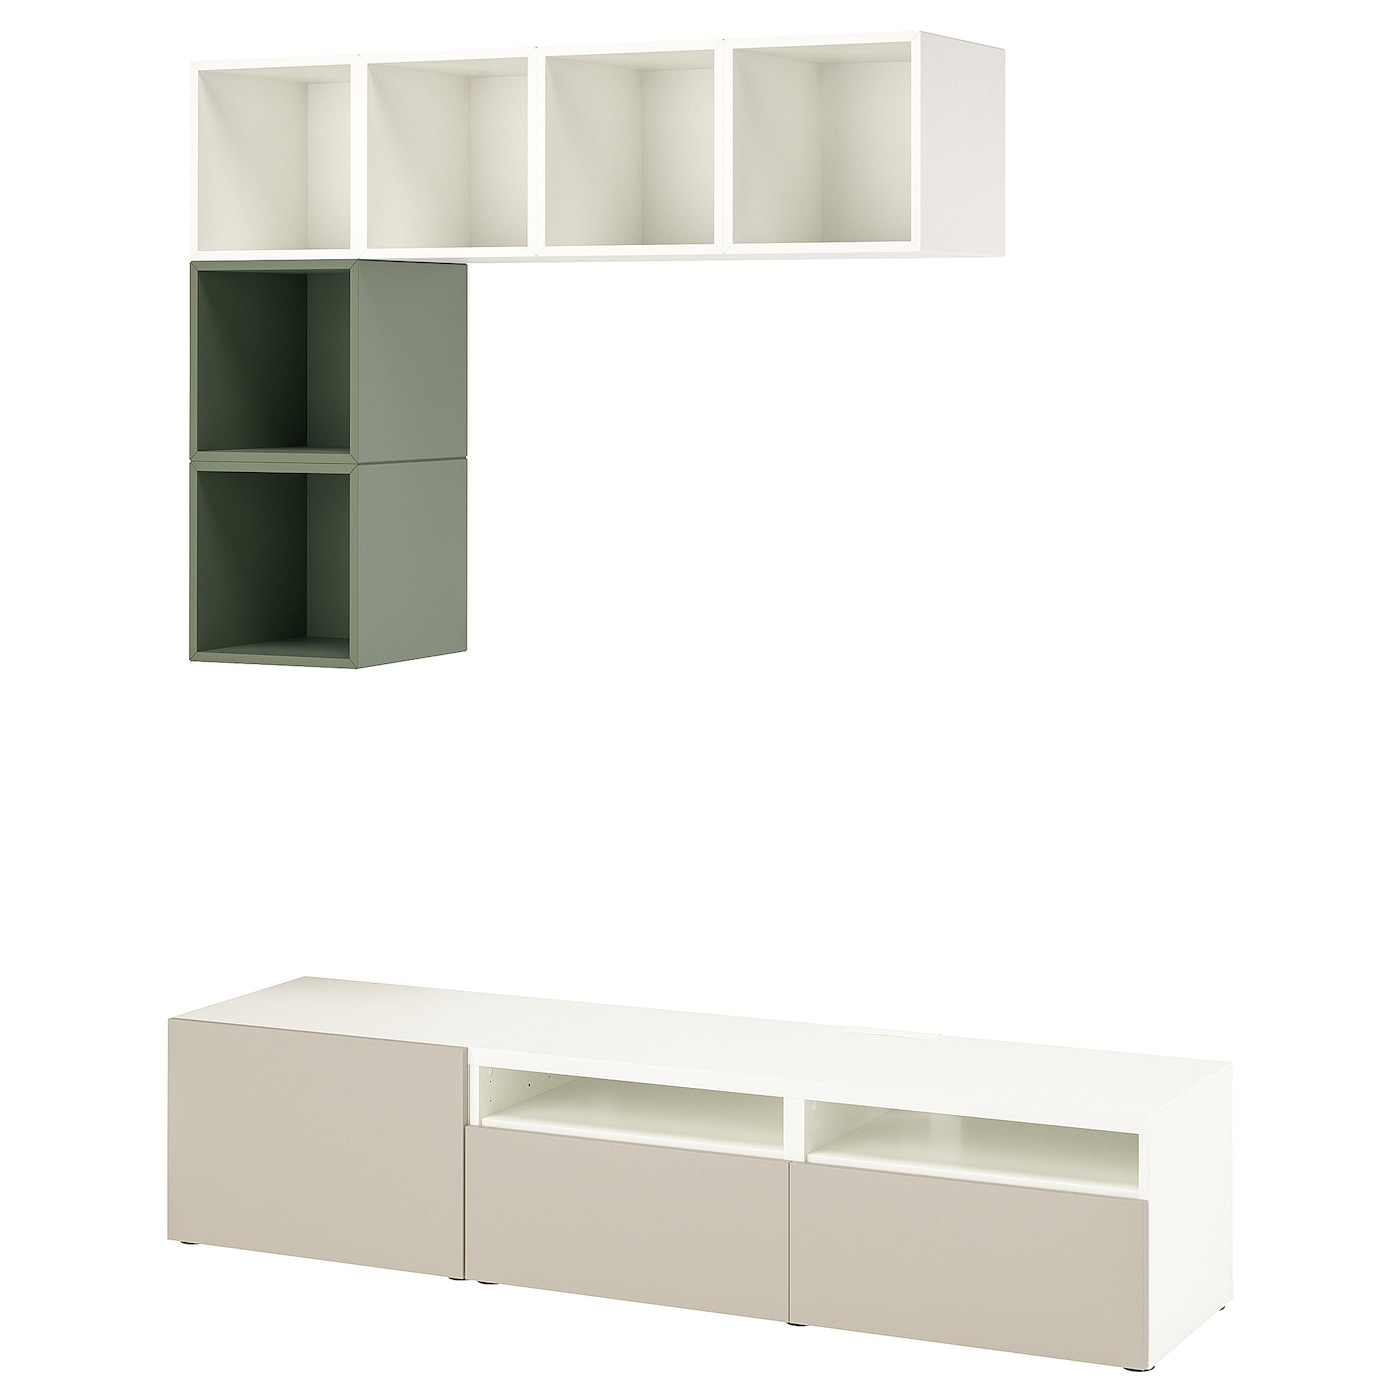 Комплект мебели д/гостиной  - IKEA BESTÅ/BESTA EKET, 170x70x180см, белый/светло-зеленый, БЕСТО ЭКЕТ ИКЕА